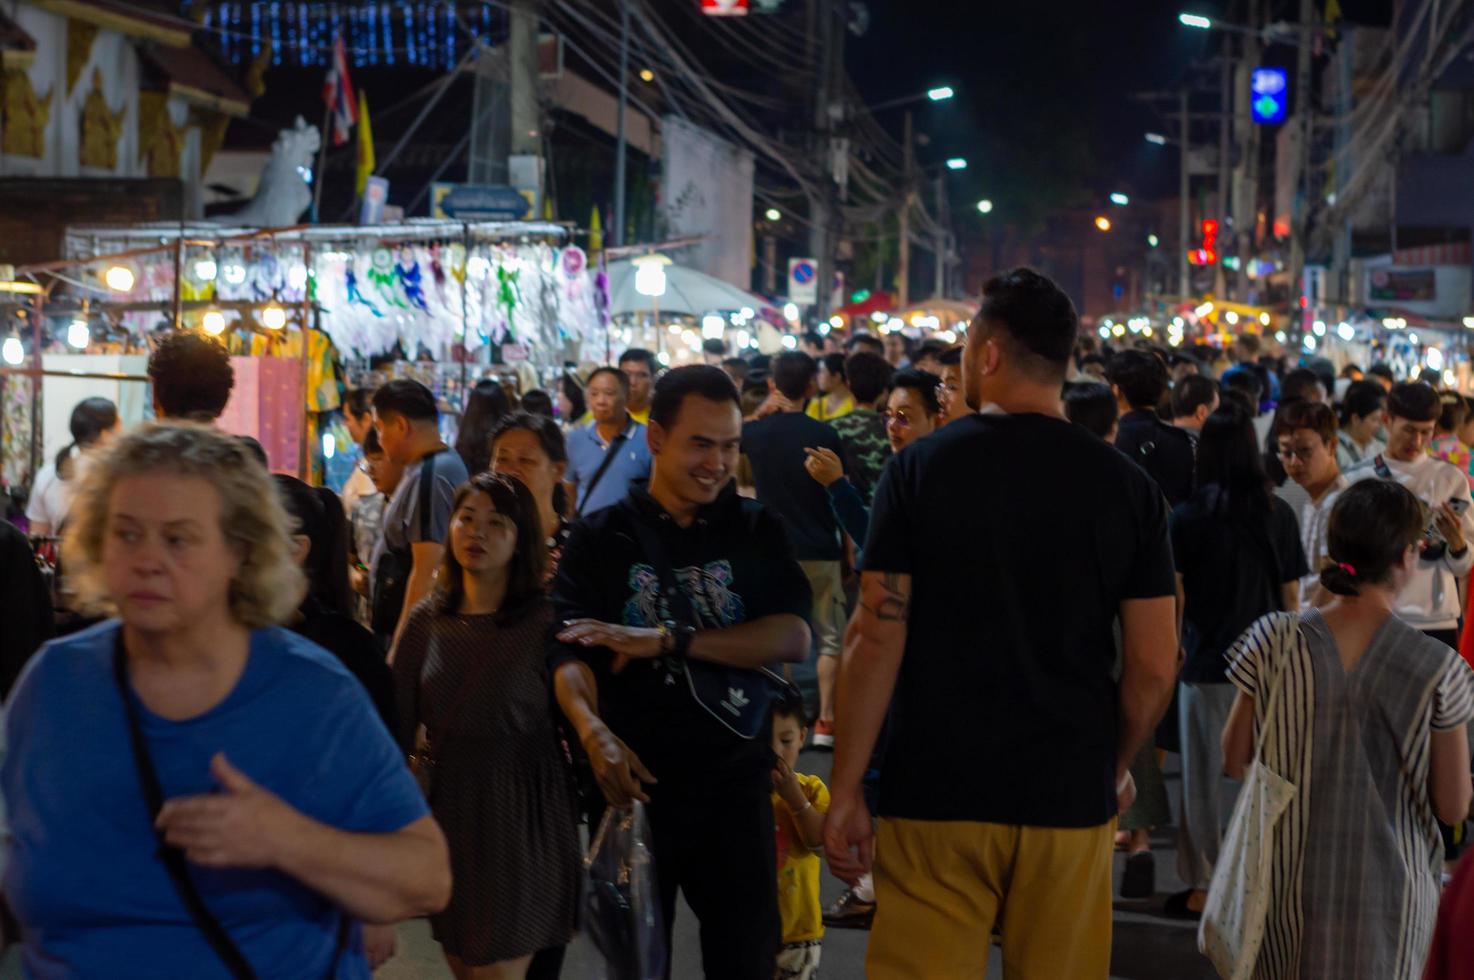 chiang mai walking street chiang mai thailandia 12 gennaio 2020un mercato di artigianato locale fatto di setaceramicametallovetrolegno o arte e cibo i turisti tailandesi e gli stranieri amano passeggiare e fare shopping foto